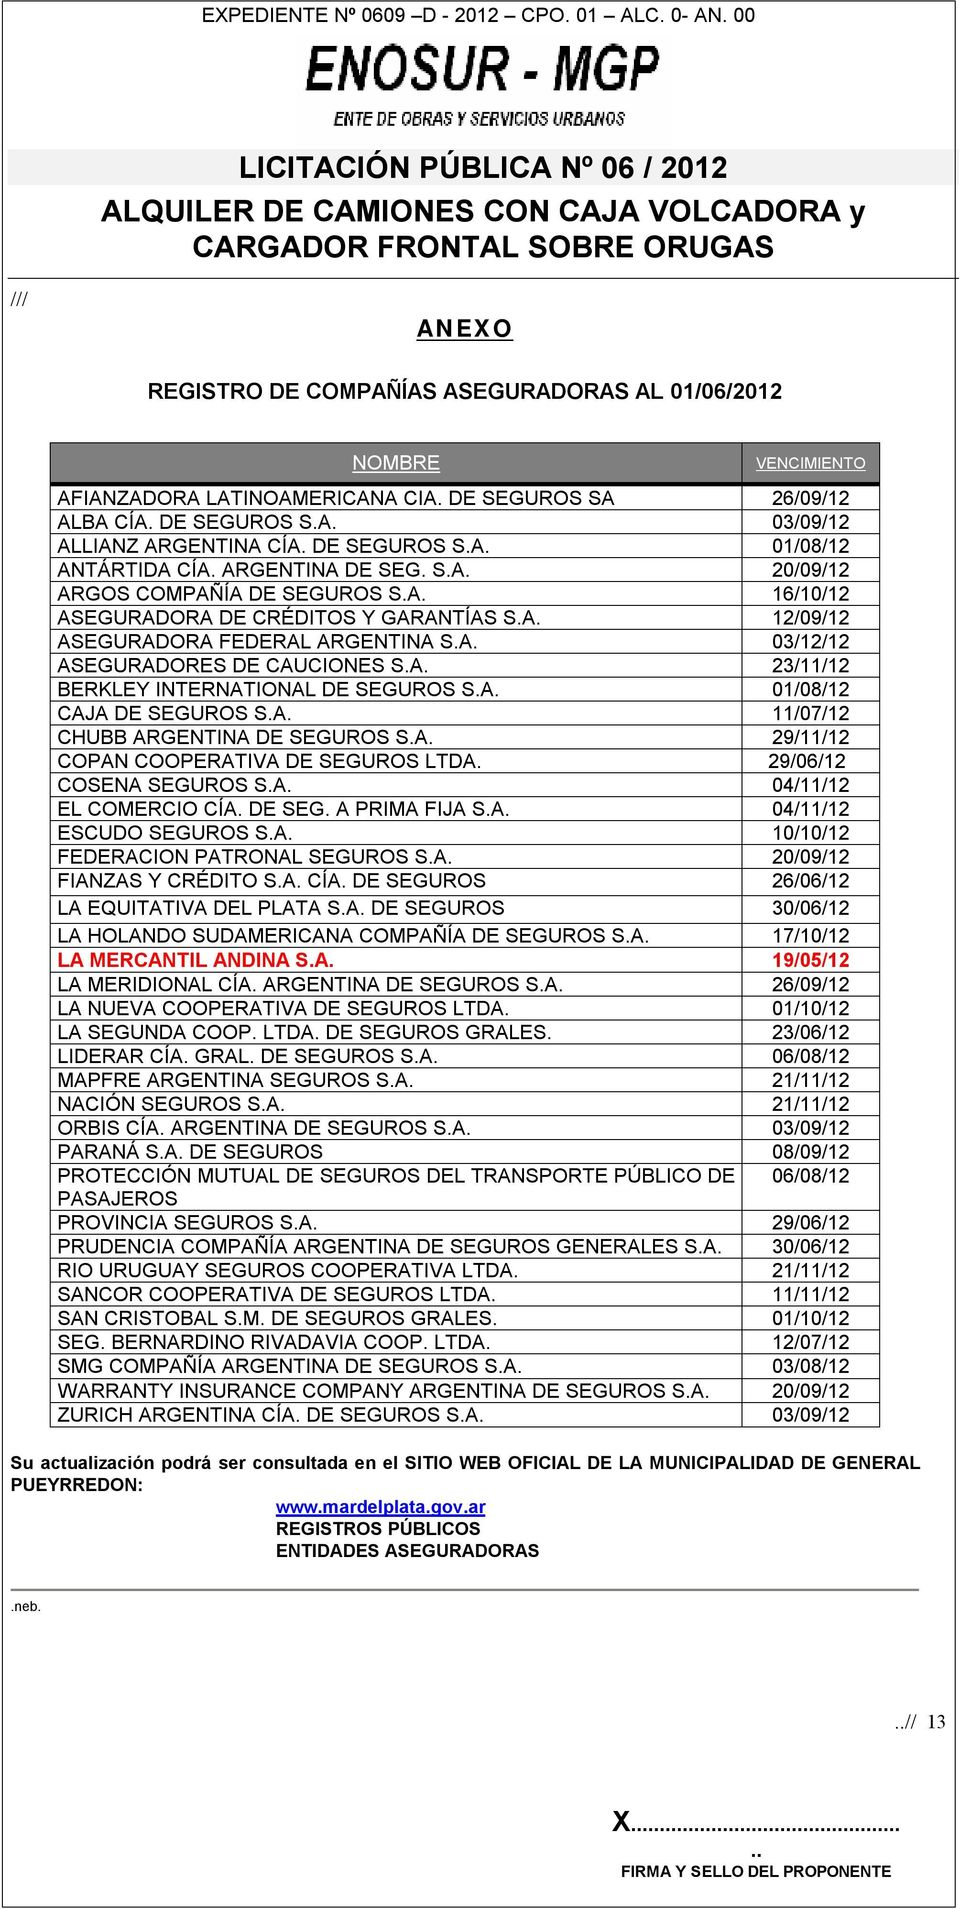 A. 23/11/12 BERKLEY INTERNATIONAL DE SEGUROS S.A. 01/08/12 CAJA DE SEGUROS S.A. 11/07/12 CHUBB ARGENTINA DE SEGUROS S.A. 29/11/12 COPAN COOPERATIVA DE SEGUROS LTDA. 29/06/12 COSENA SEGUROS S.A. 04/11/12 EL COMERCIO CÍA.